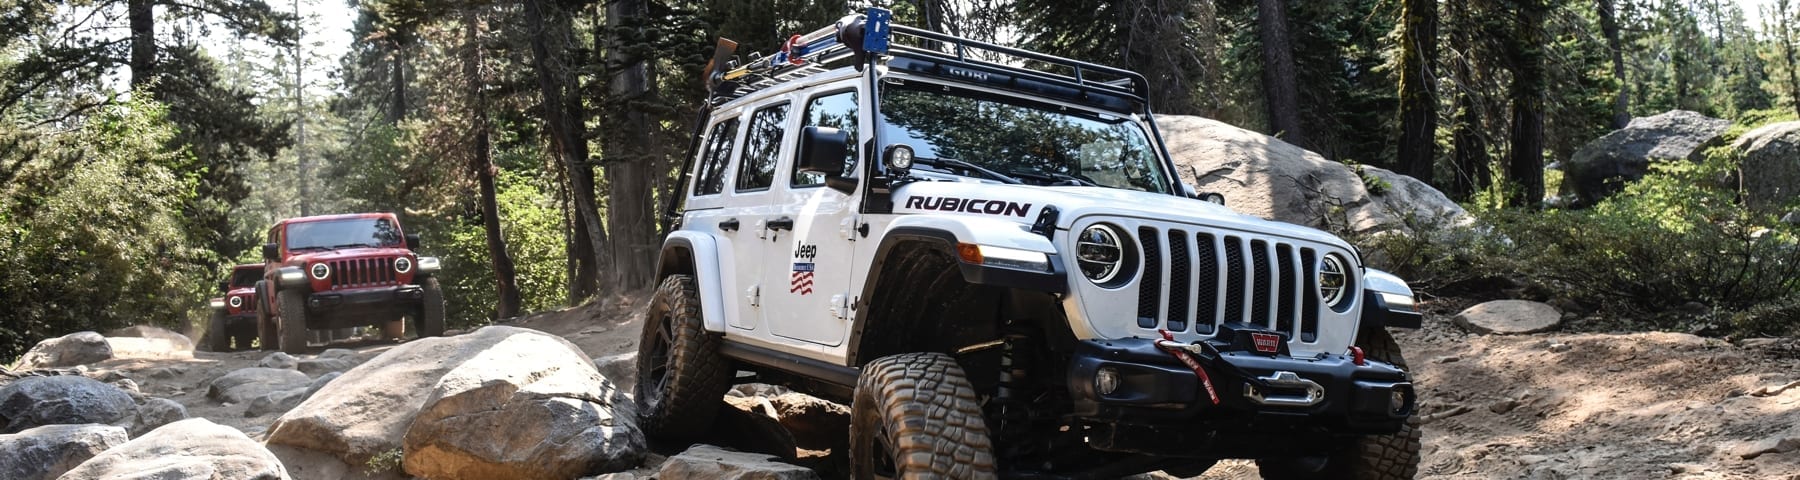 24th Rubicon Trail 2021 - Jeep Jamboree U.S.A.